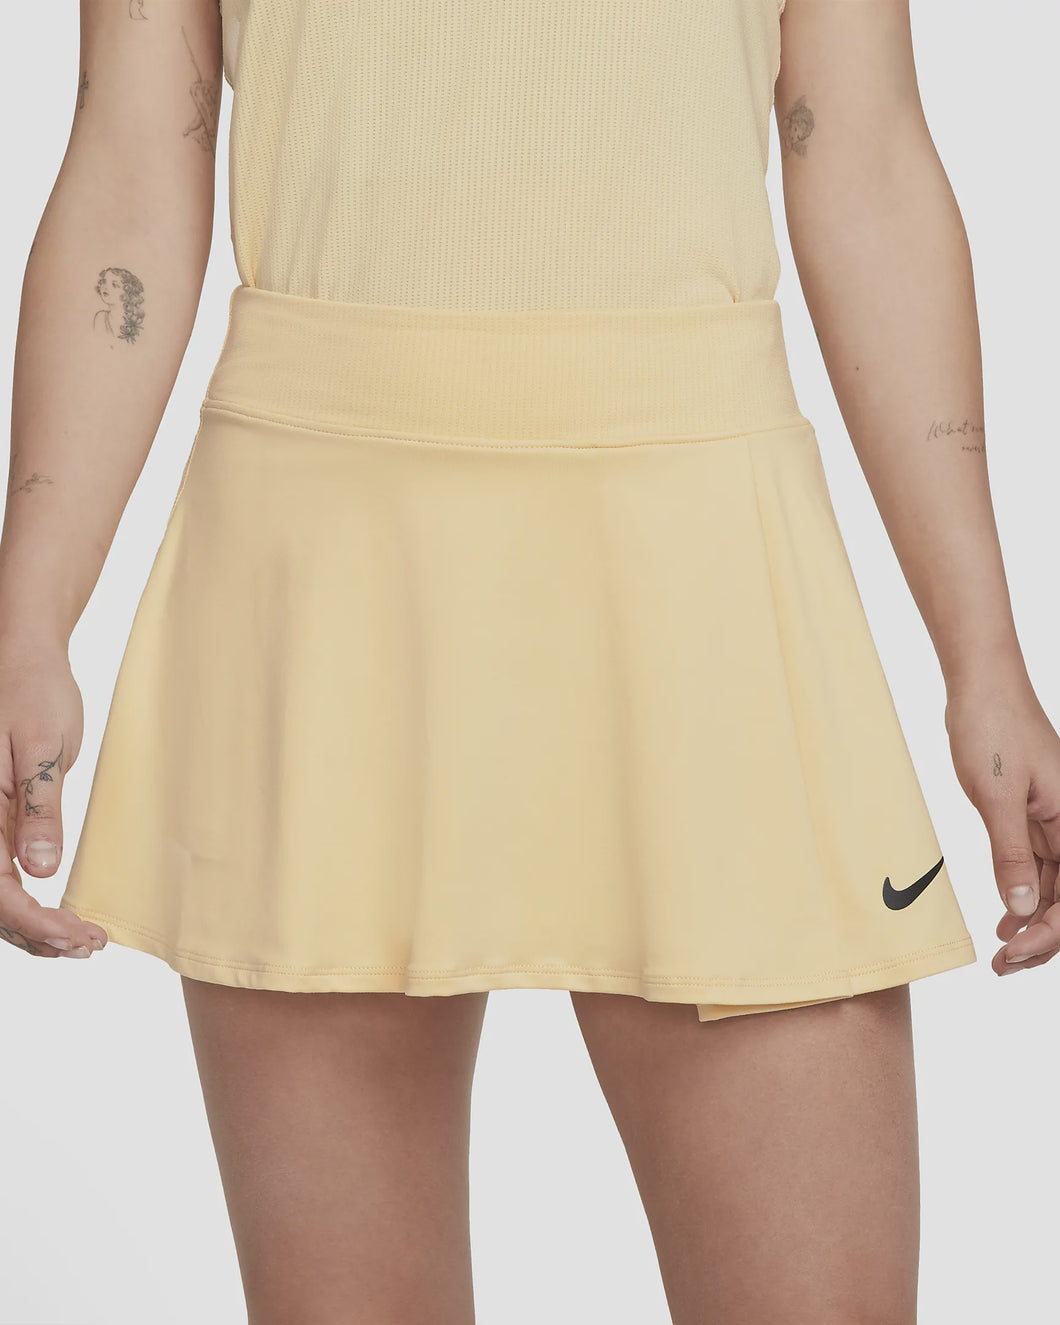 Comercialización Barón Peluquero Women's Nike Court Flouncy Skirt DH9552-294 – All About Tennis